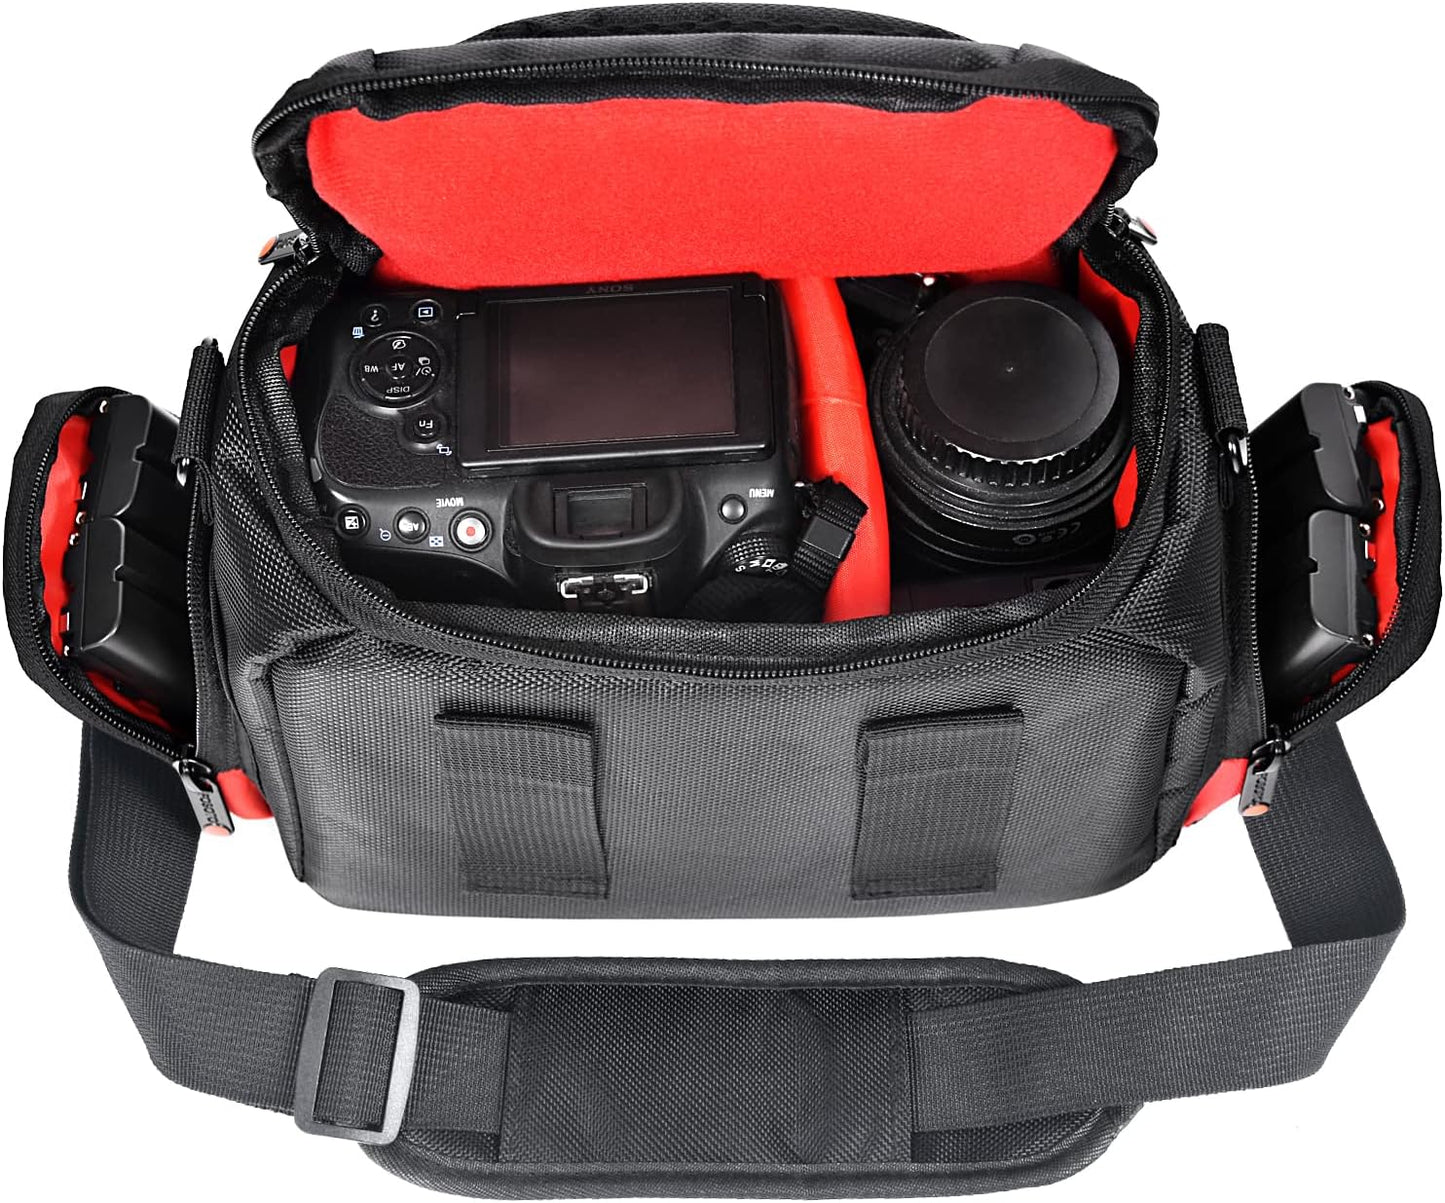 FOSOTO Camera Shoulder Bag Case Compatible for Nikon D3000 D3200 D3300 D5100 D5300 D7500 D500 D610 Canon 2000D T8i SL2 T7i DSLR Cameras